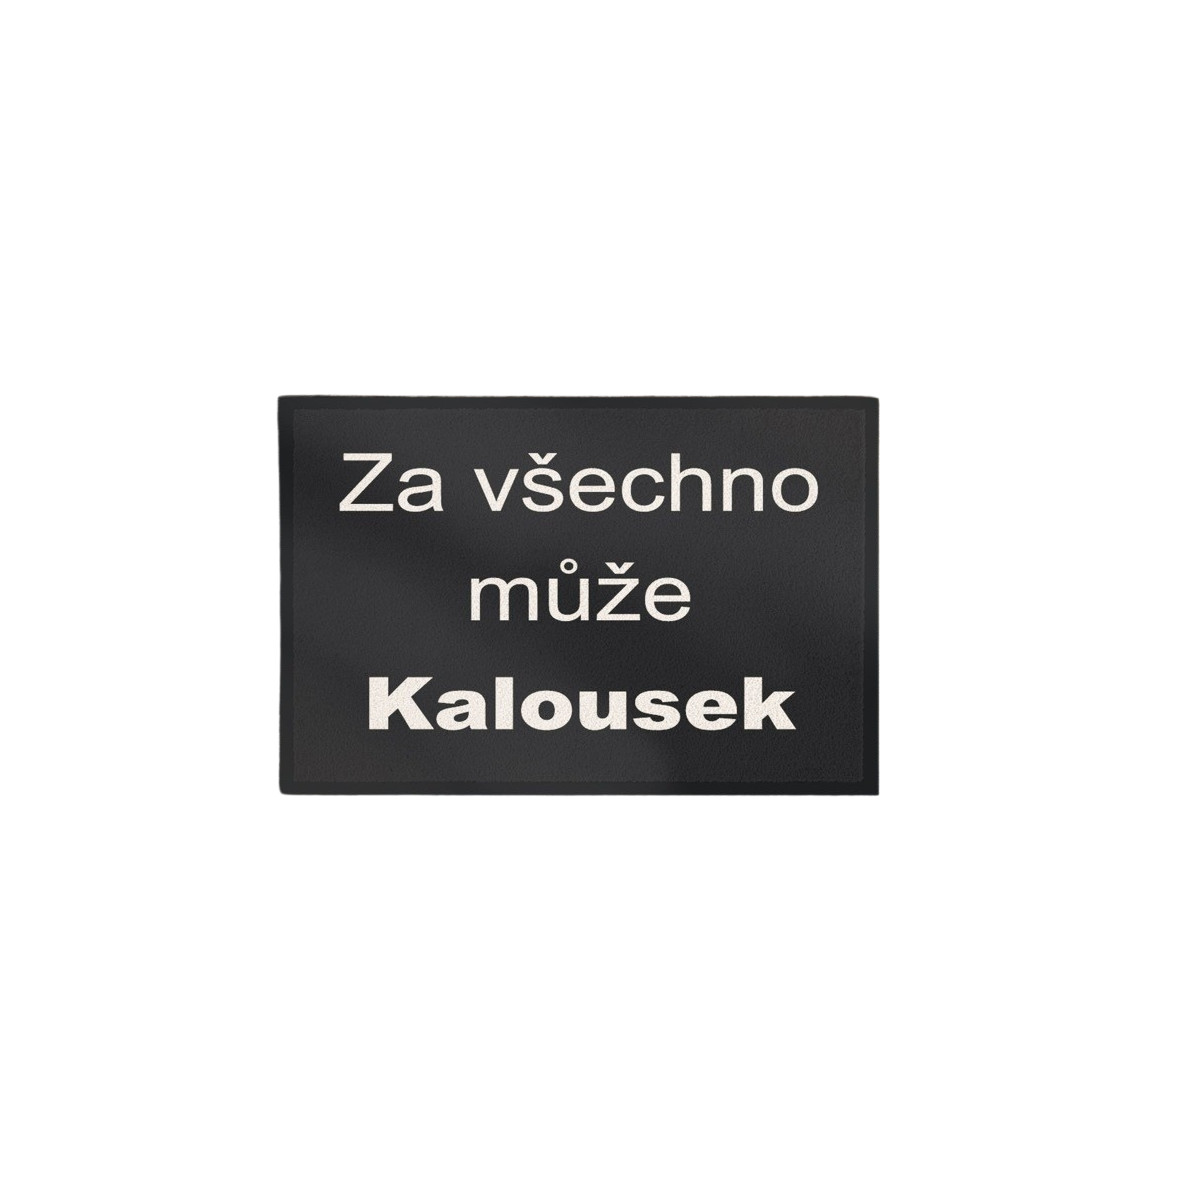 Rohožka Kalousek 40x60 cm